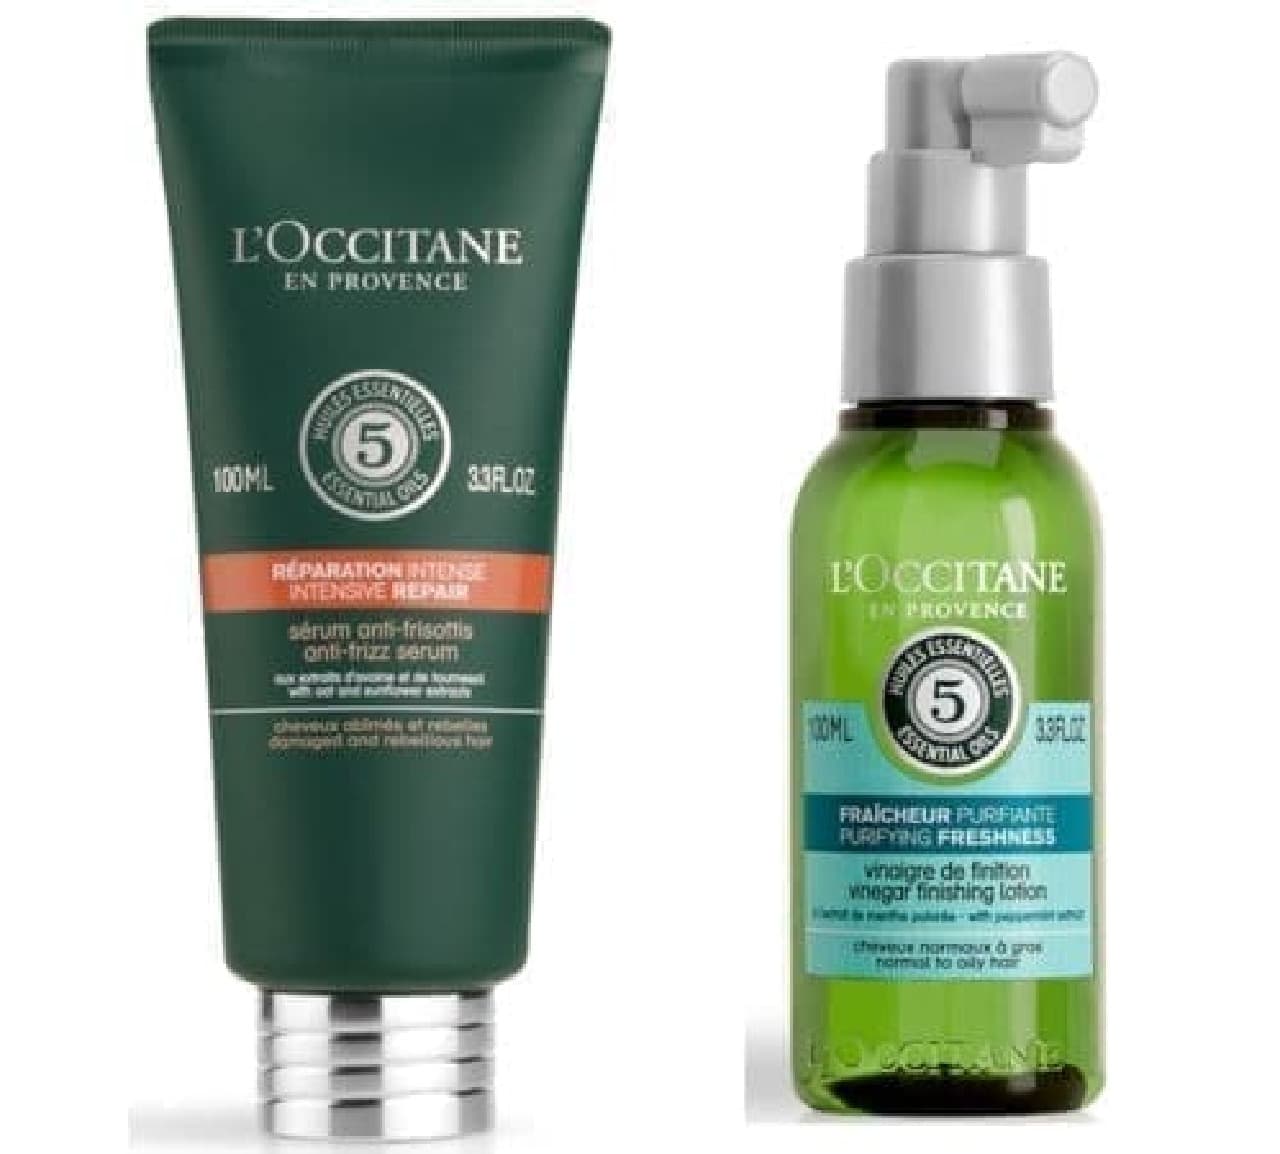 L'Occitane "Five Herbs Hair Care Duo"